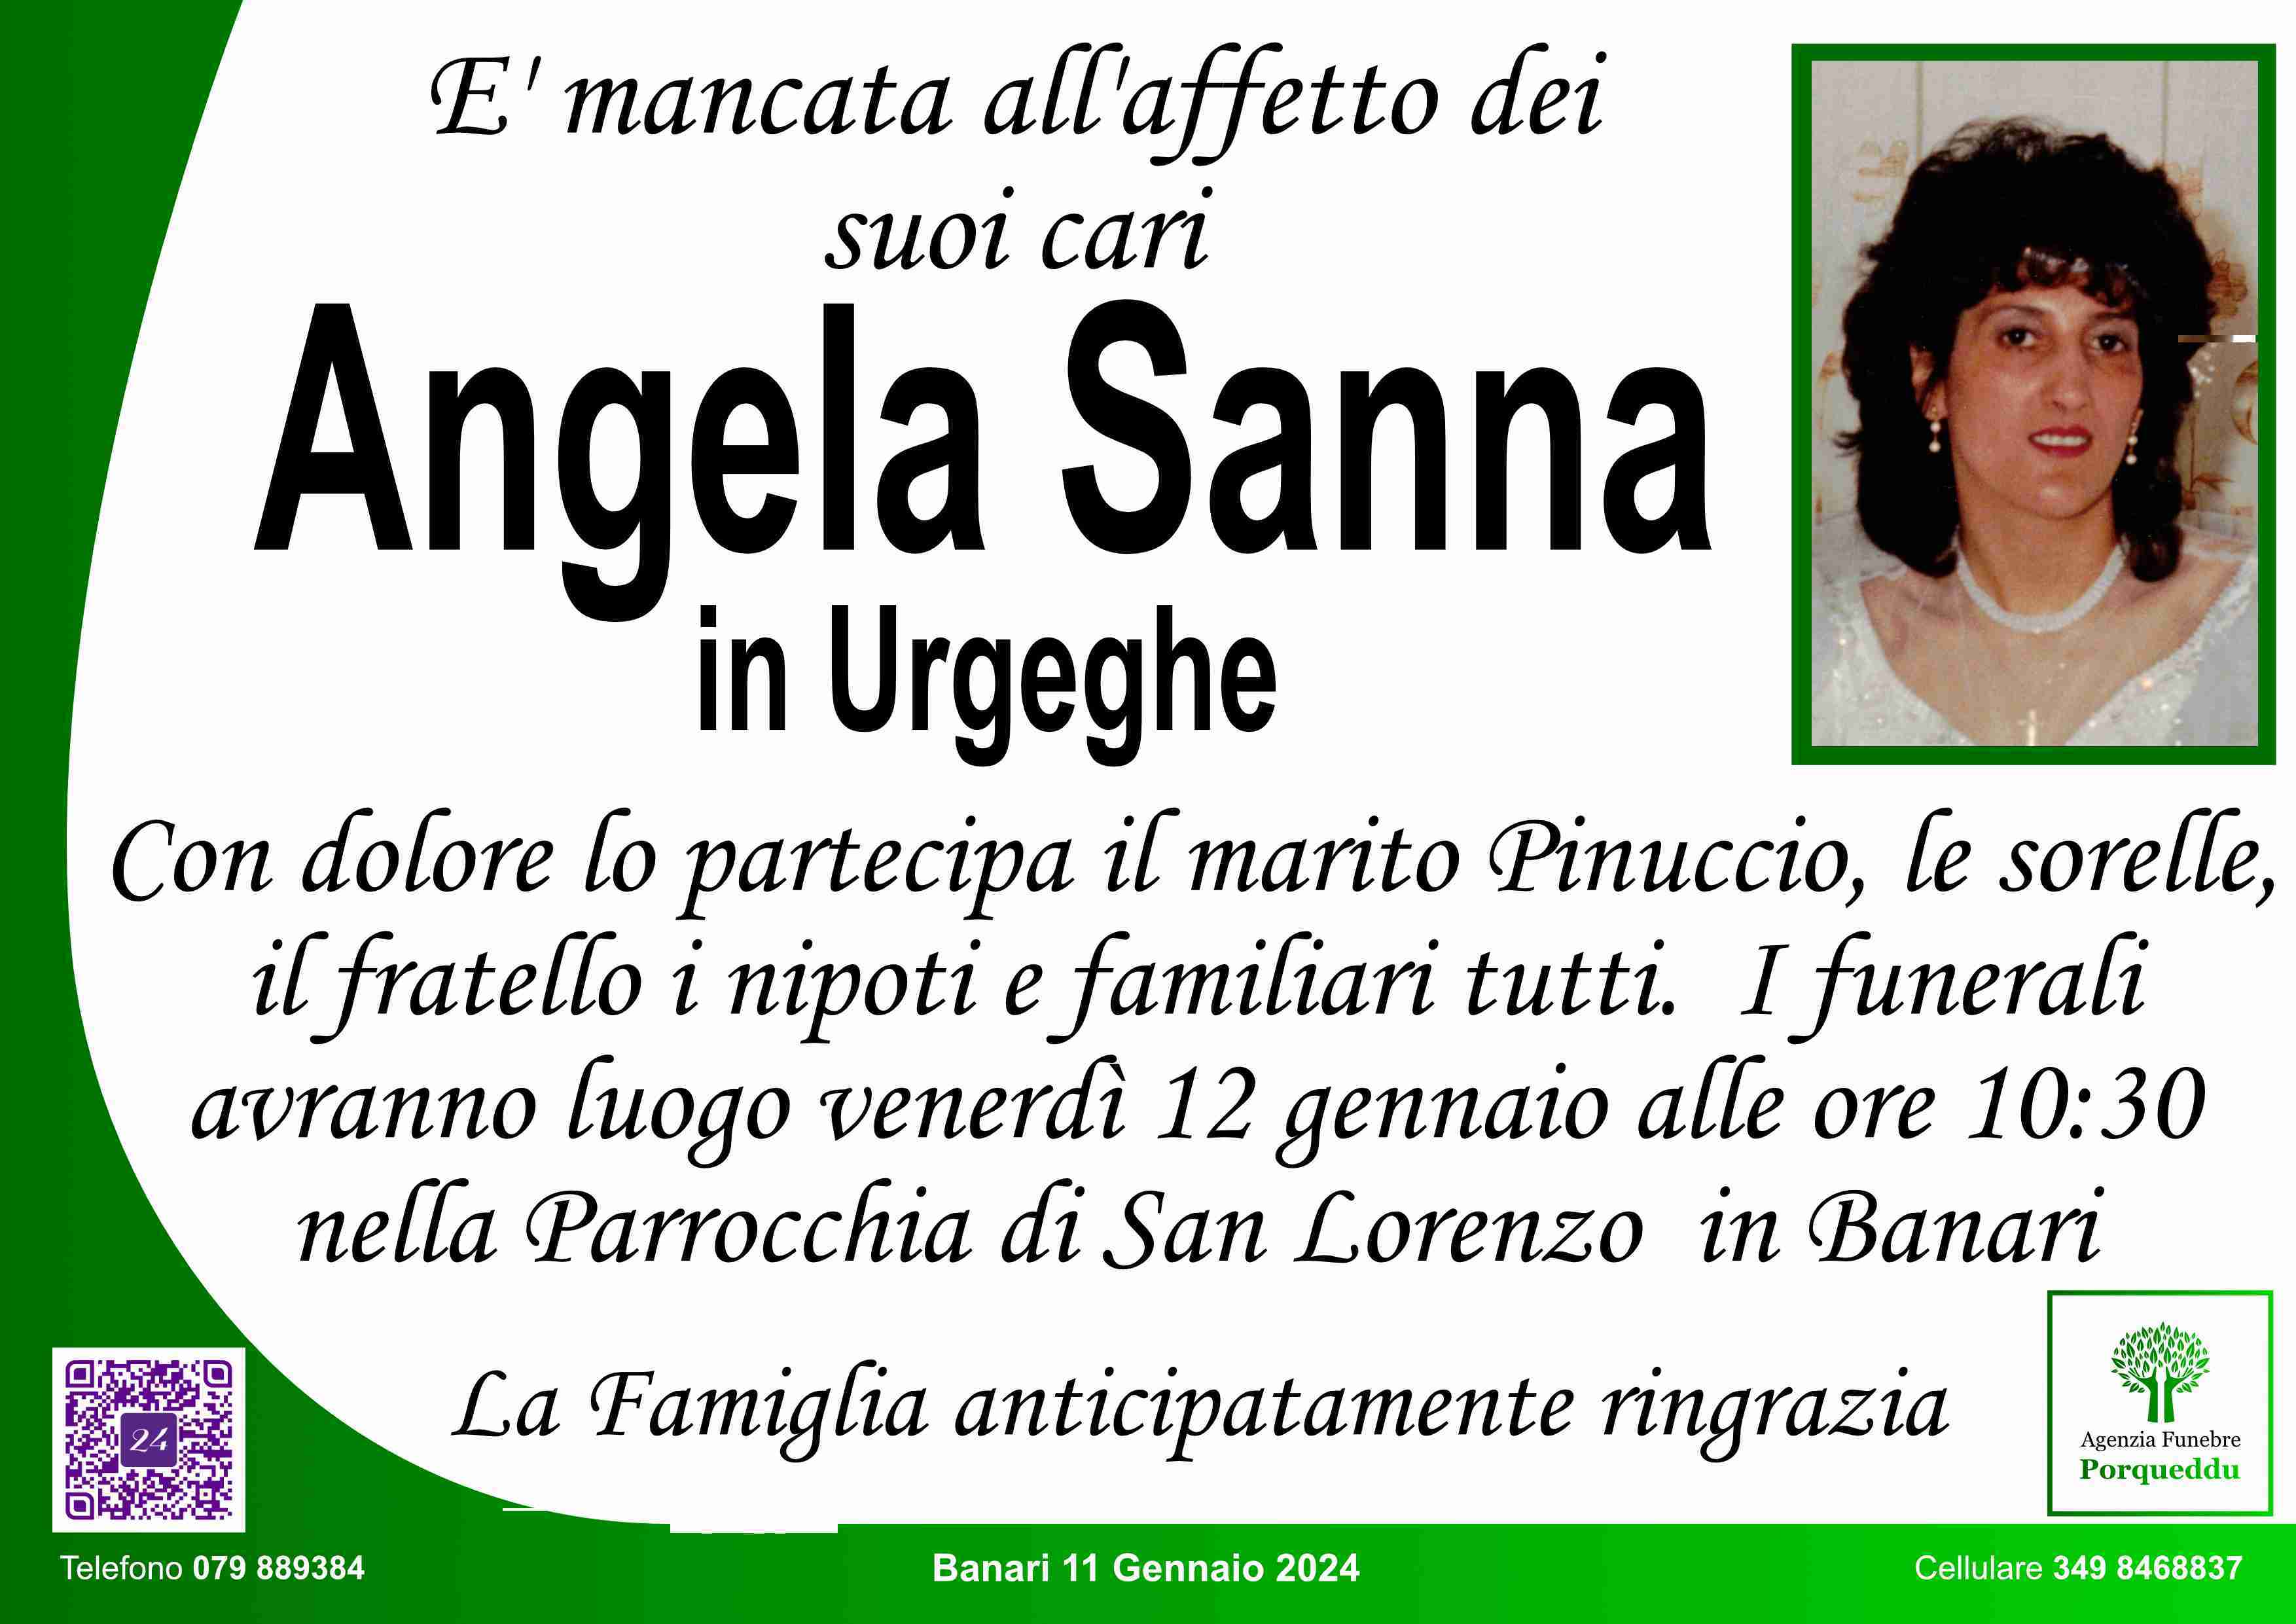 Sanna Angioletta